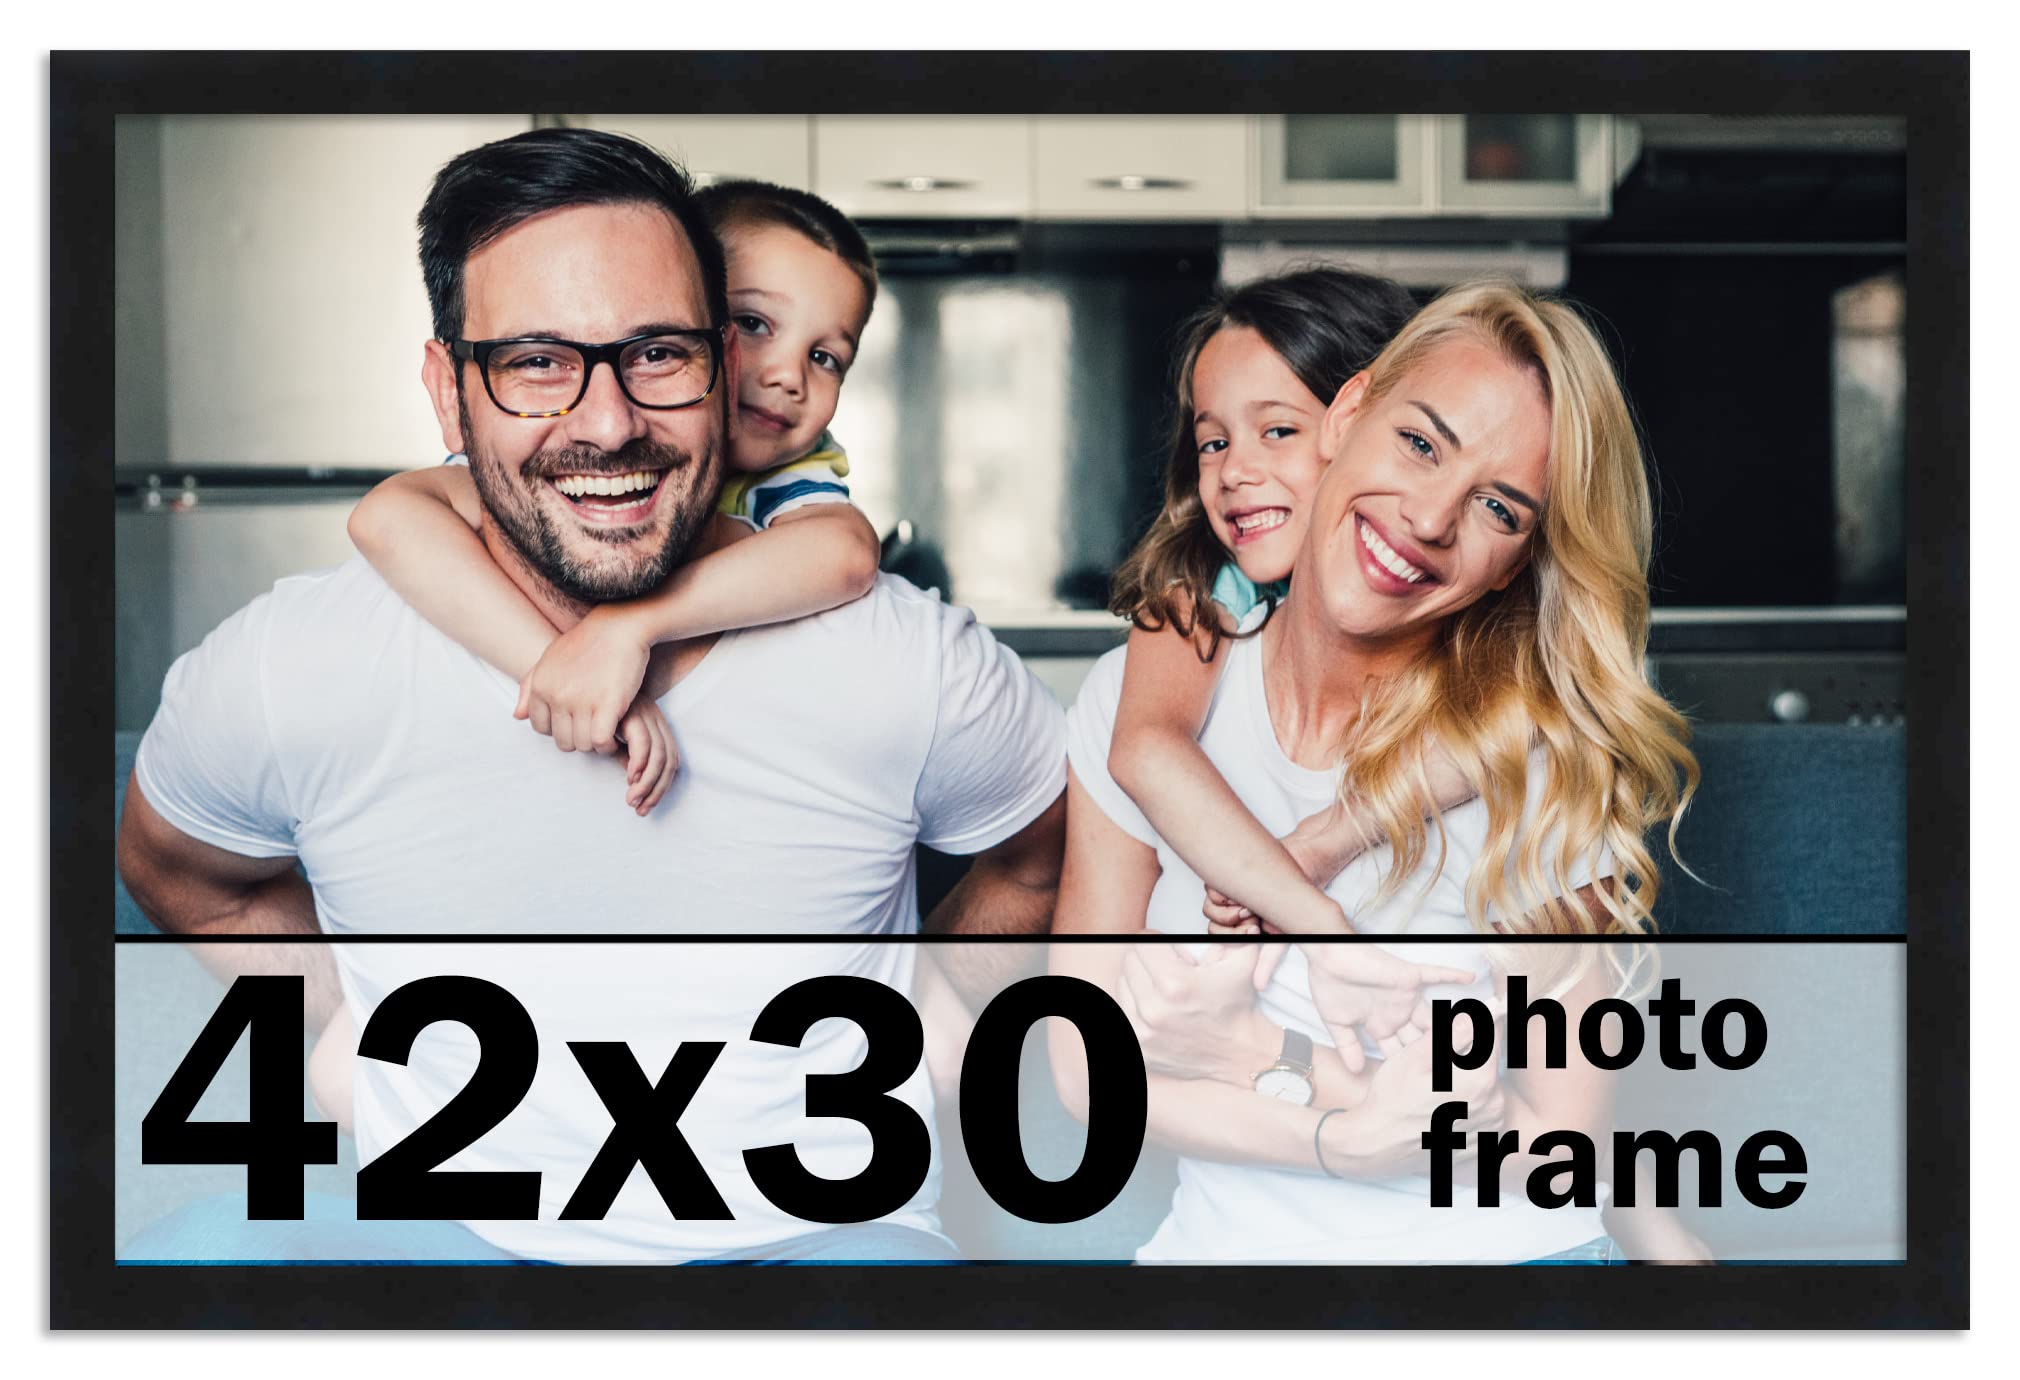 30 x 42 frame